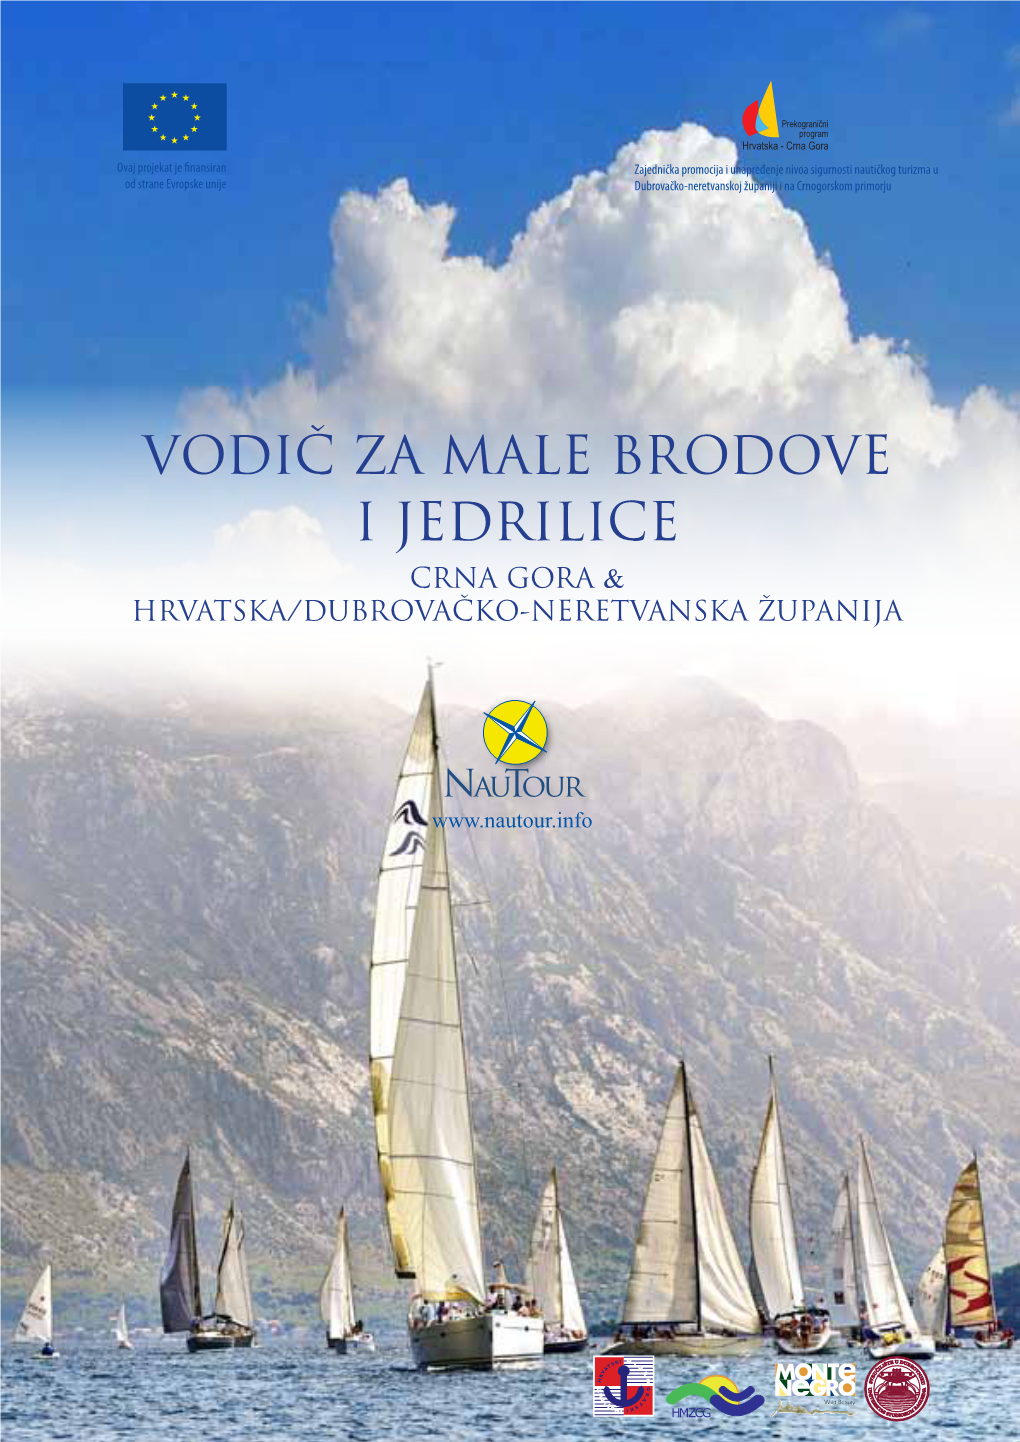 Vodič Za Male Brodove I Jedrilice Crna Gora & Hrvatska/Dubrovačko-Neretvanska Županija